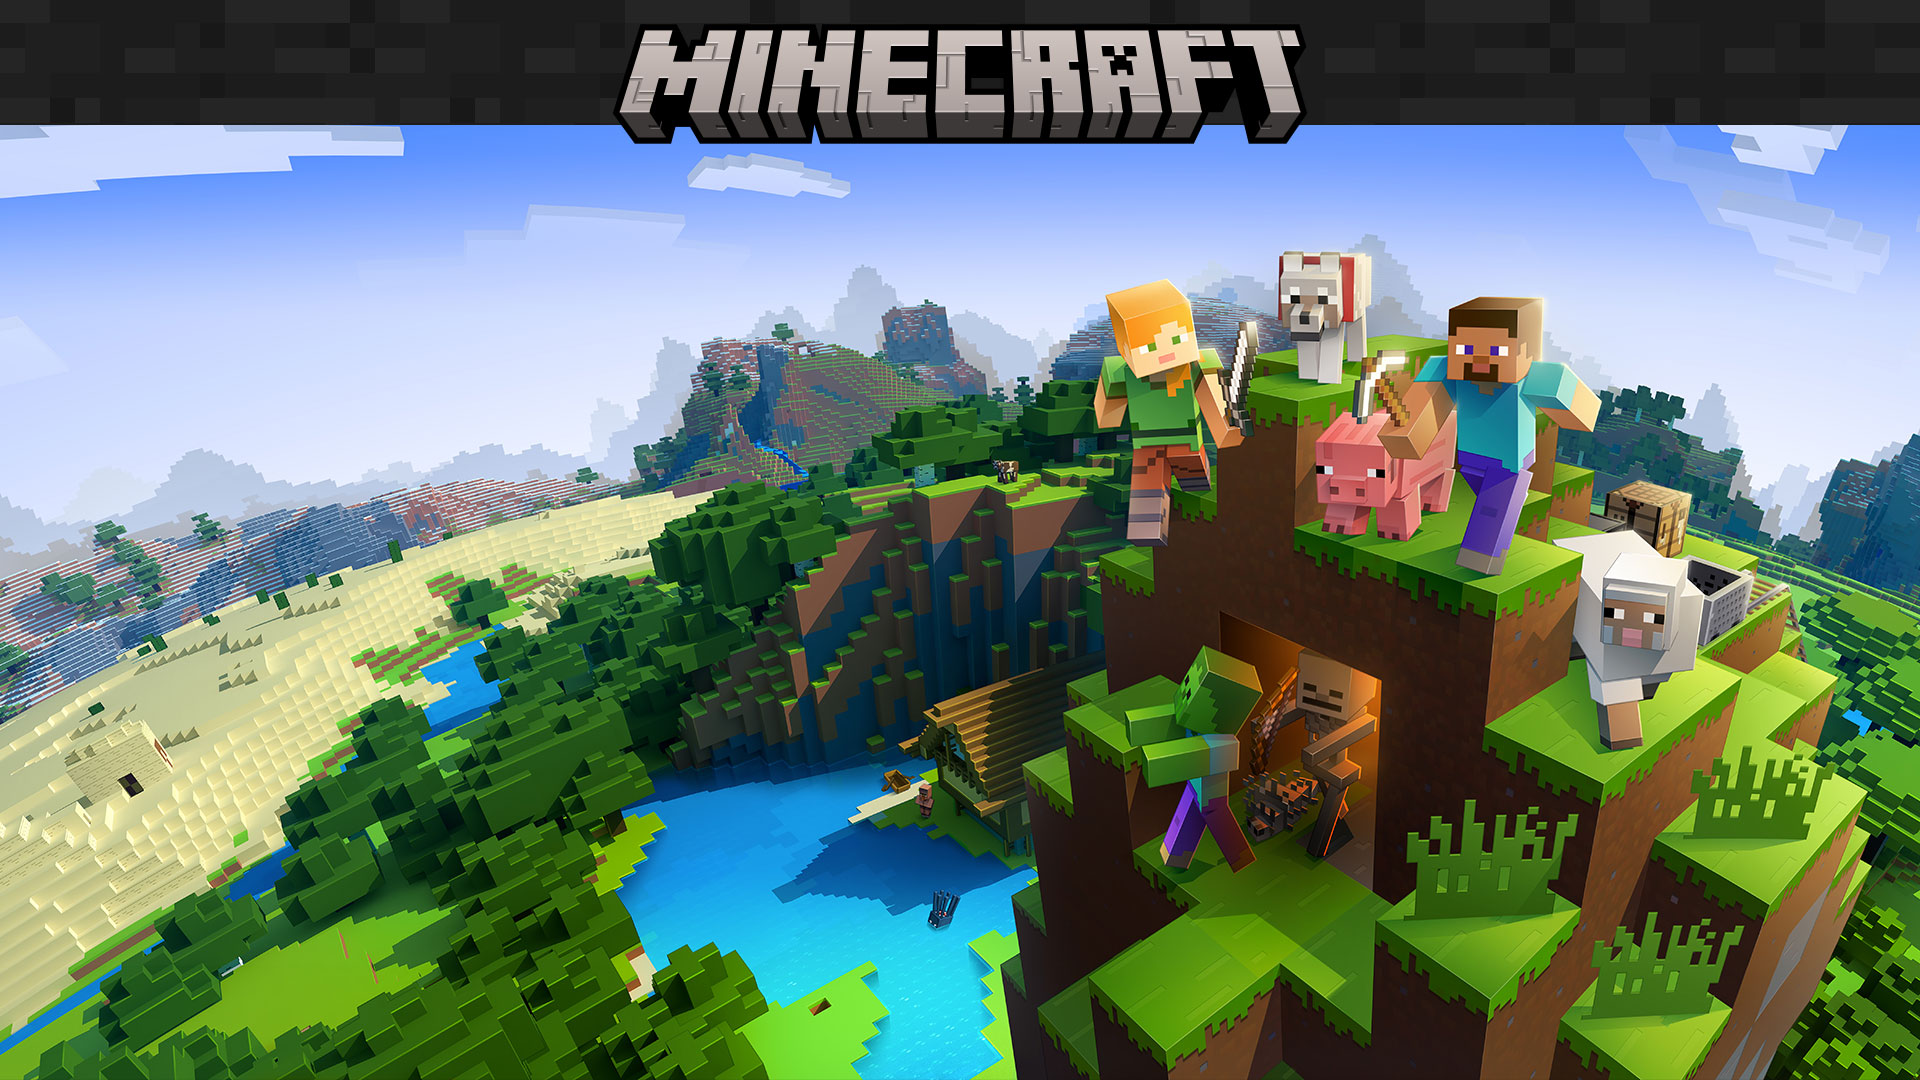 Minecraft-Logo mit Charakteren aus dem Spiel, die durch eine Landschaft aus Blöcken laufen.